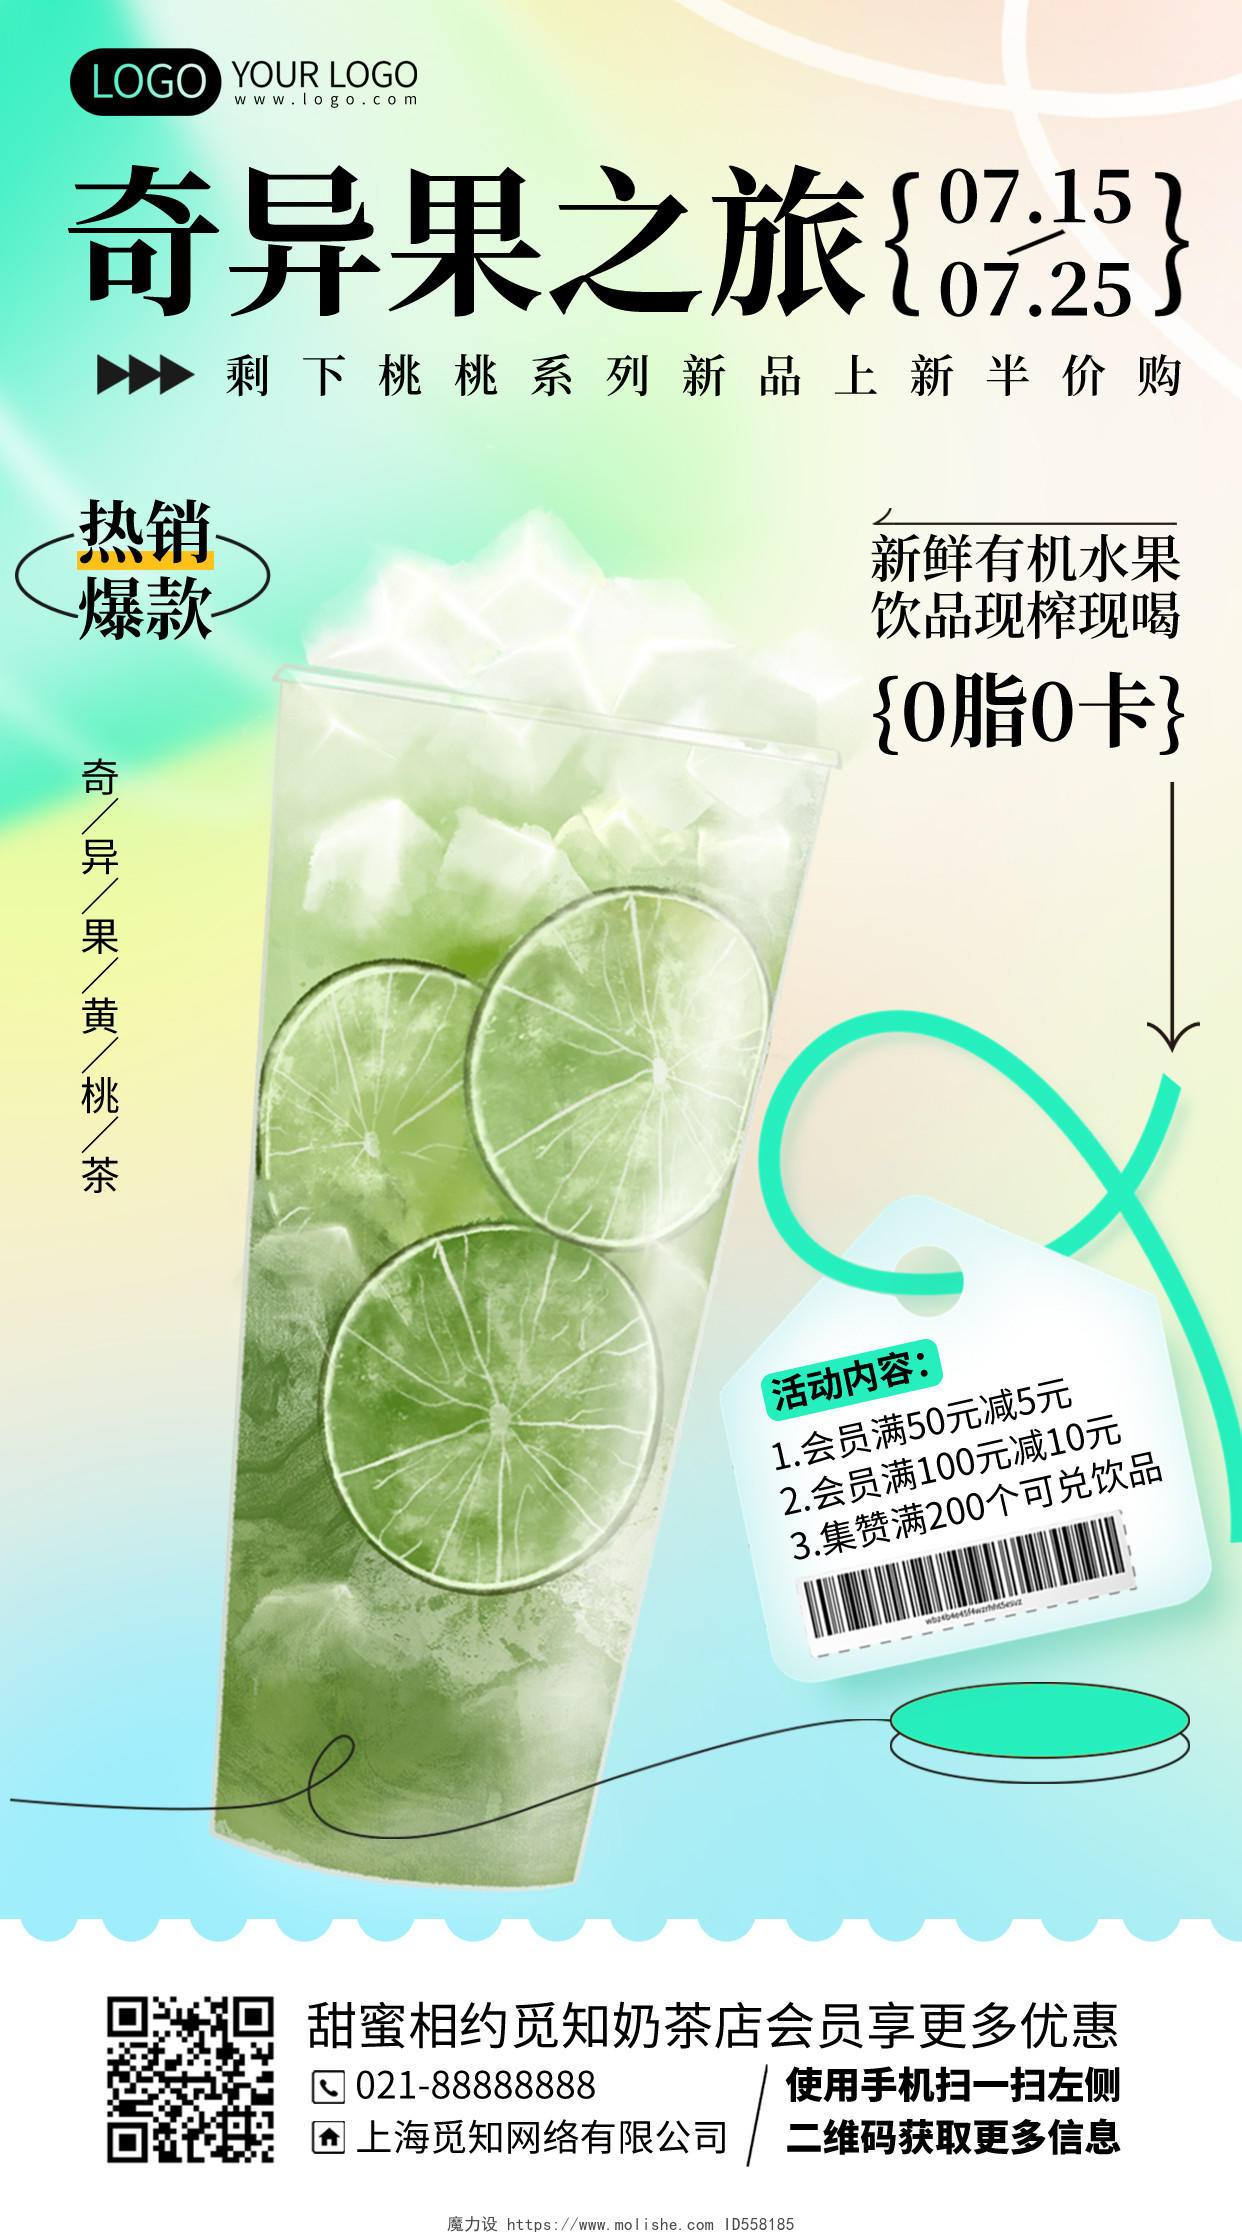 夏季奶茶优惠活动促销简约渐变手机海报